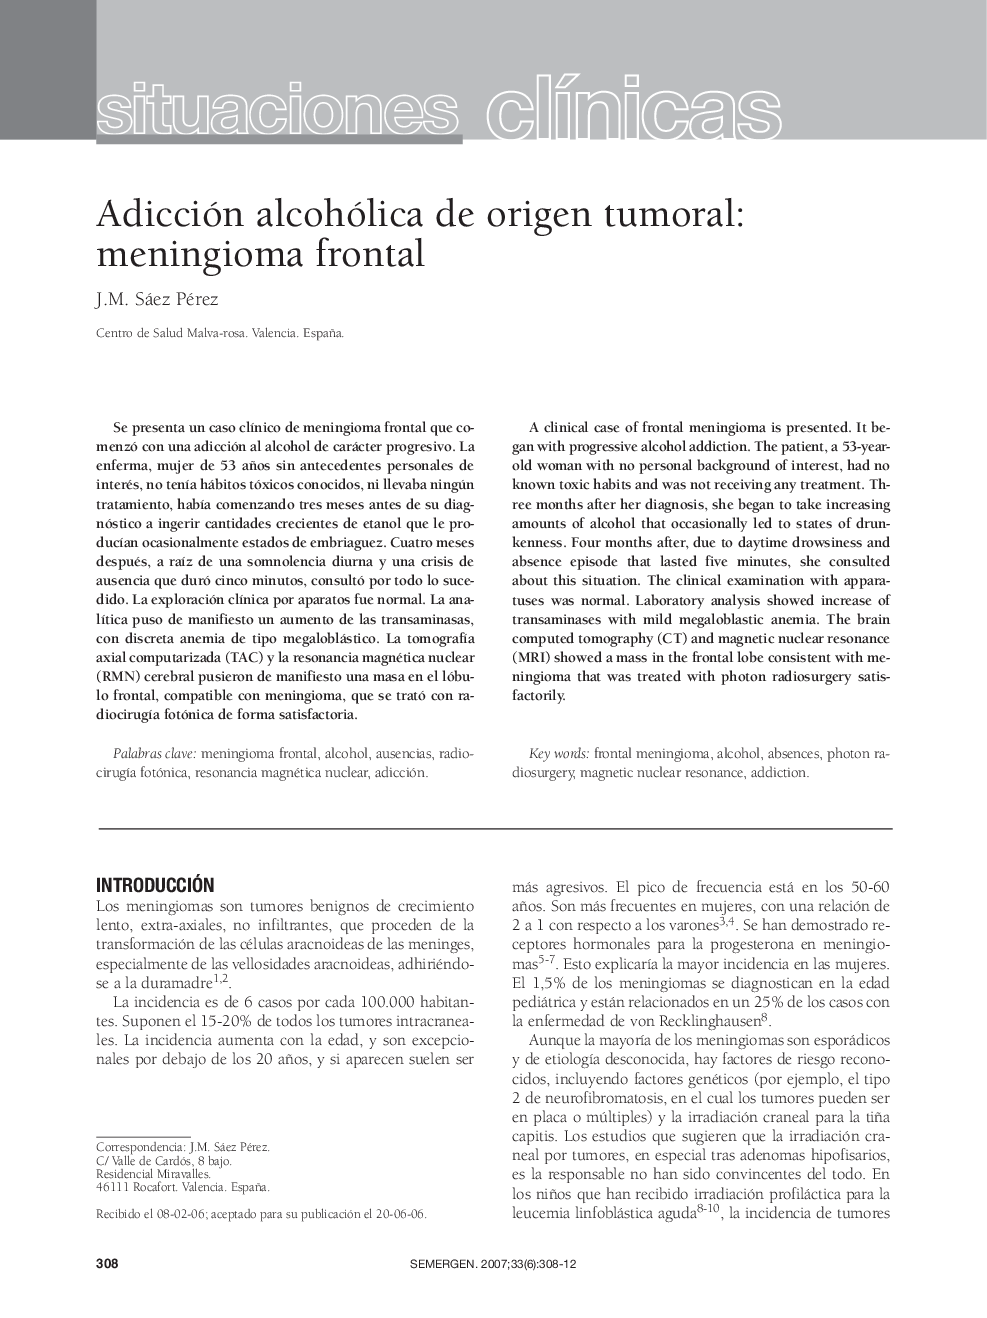 Adicción alcohólica de origen tumoral: meningioma frontal